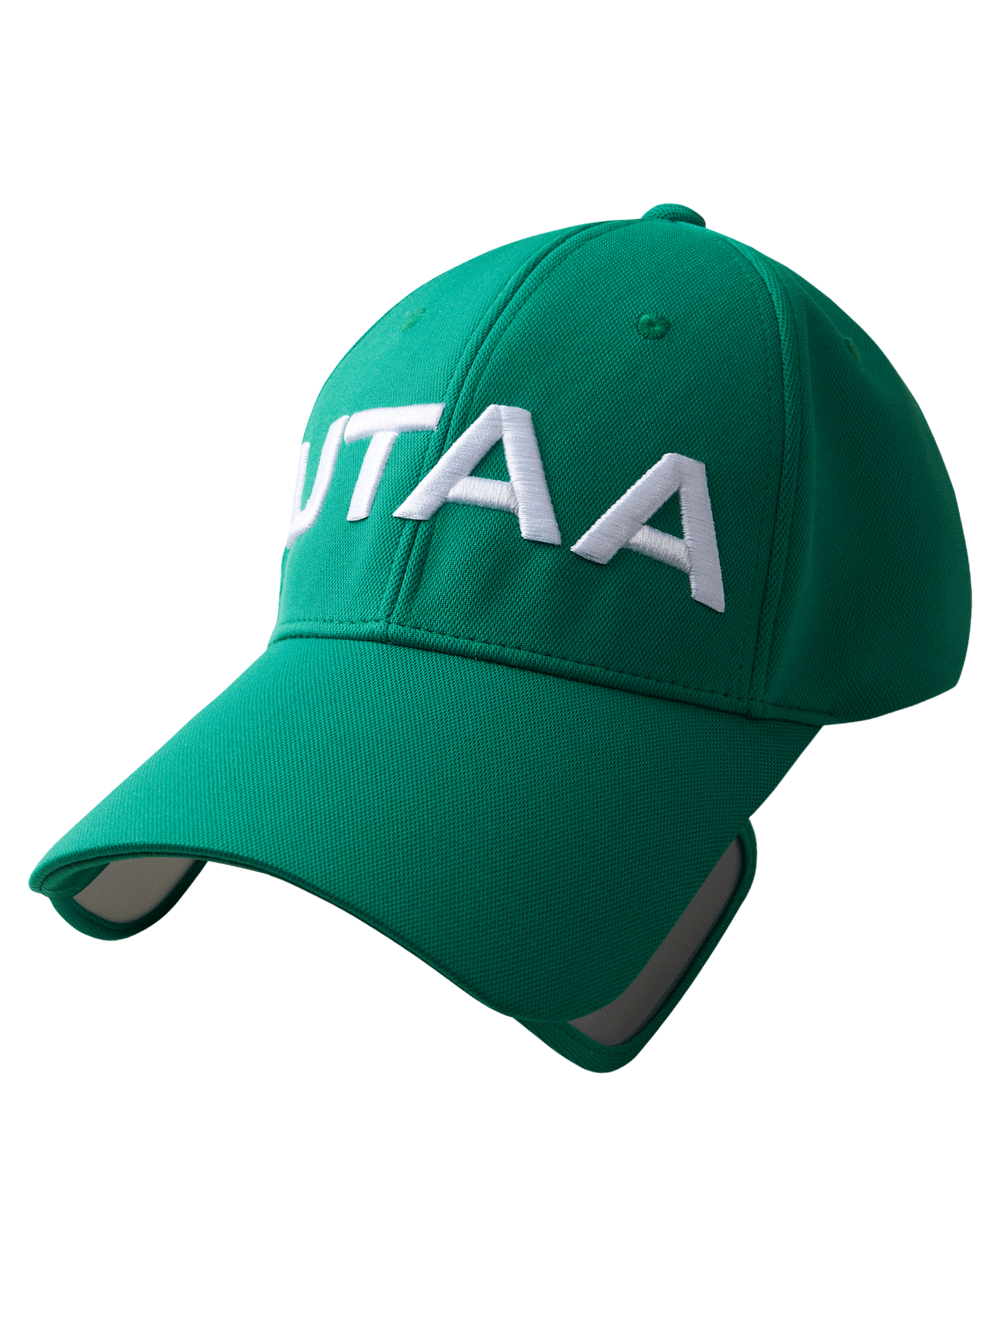 UTAA Big Logo Slide Sun Visor :  Green  (UC0GCU394GN)